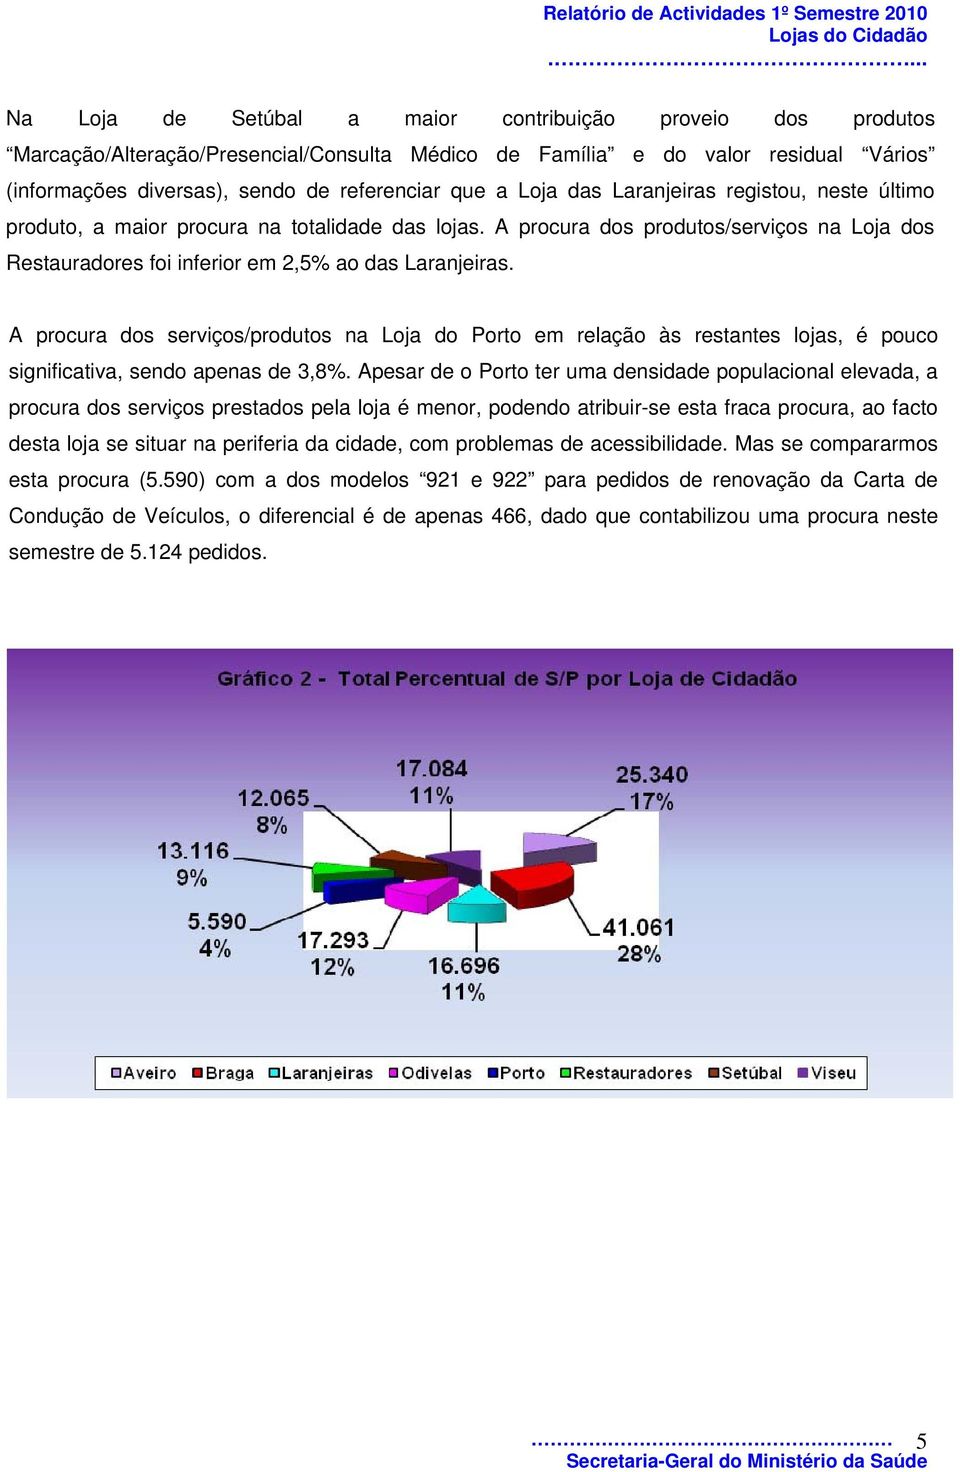 A procura dos serviços/produtos na Loja do Porto em relação às restantes lojas, é pouco significativa, sendo apenas de 3,8%.